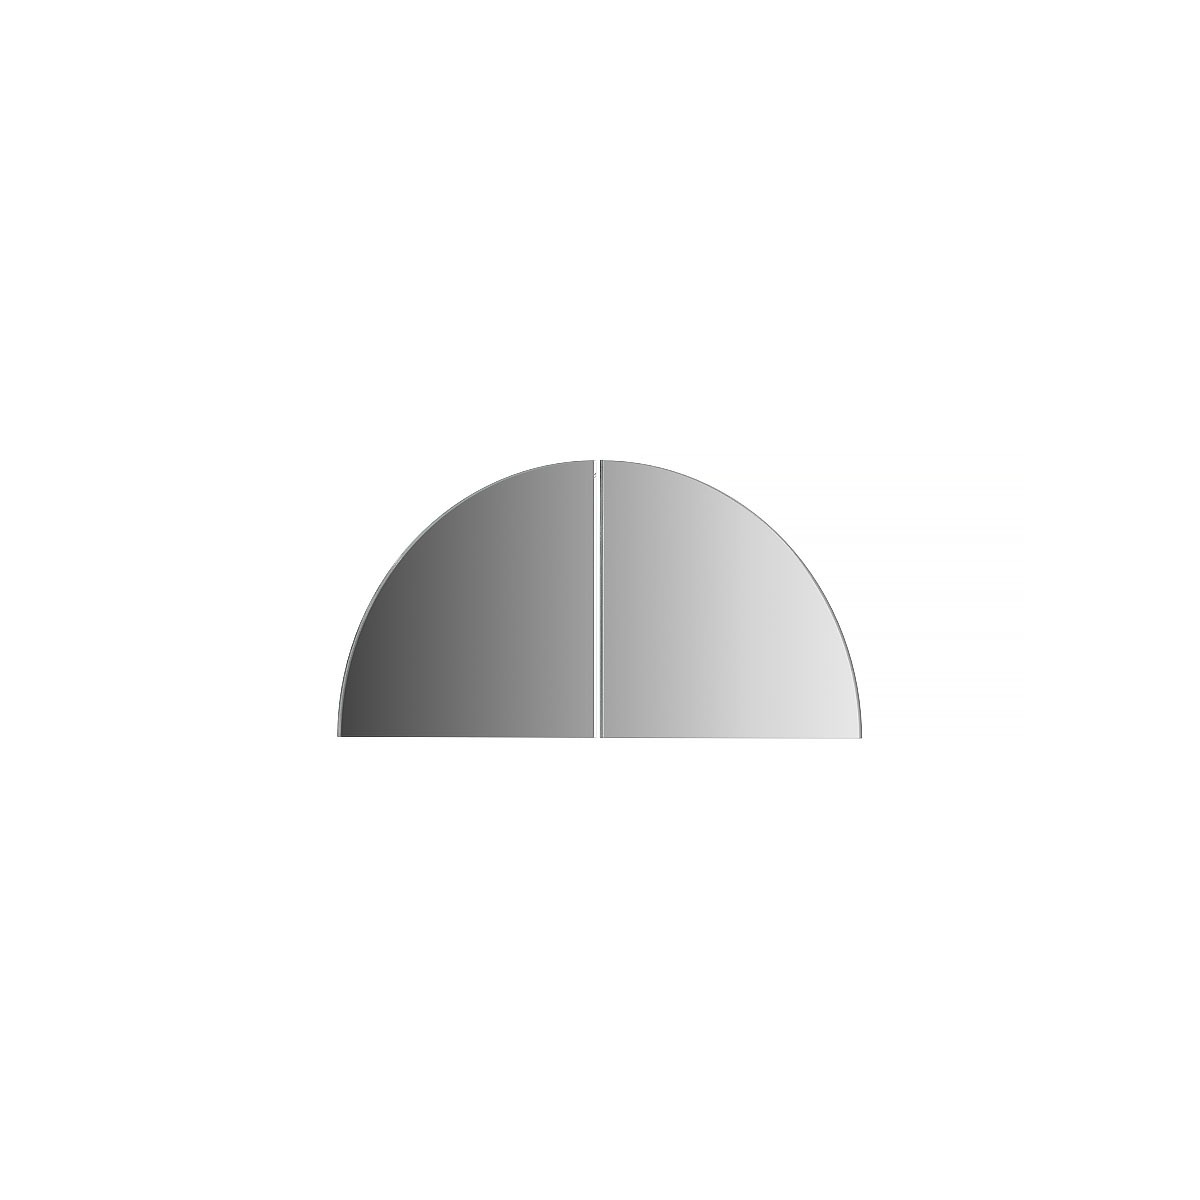 фото Зеркальная плитка evoform со шлифованной кромкой - комплект 2 шт четверть круга 10х10 см; серебро